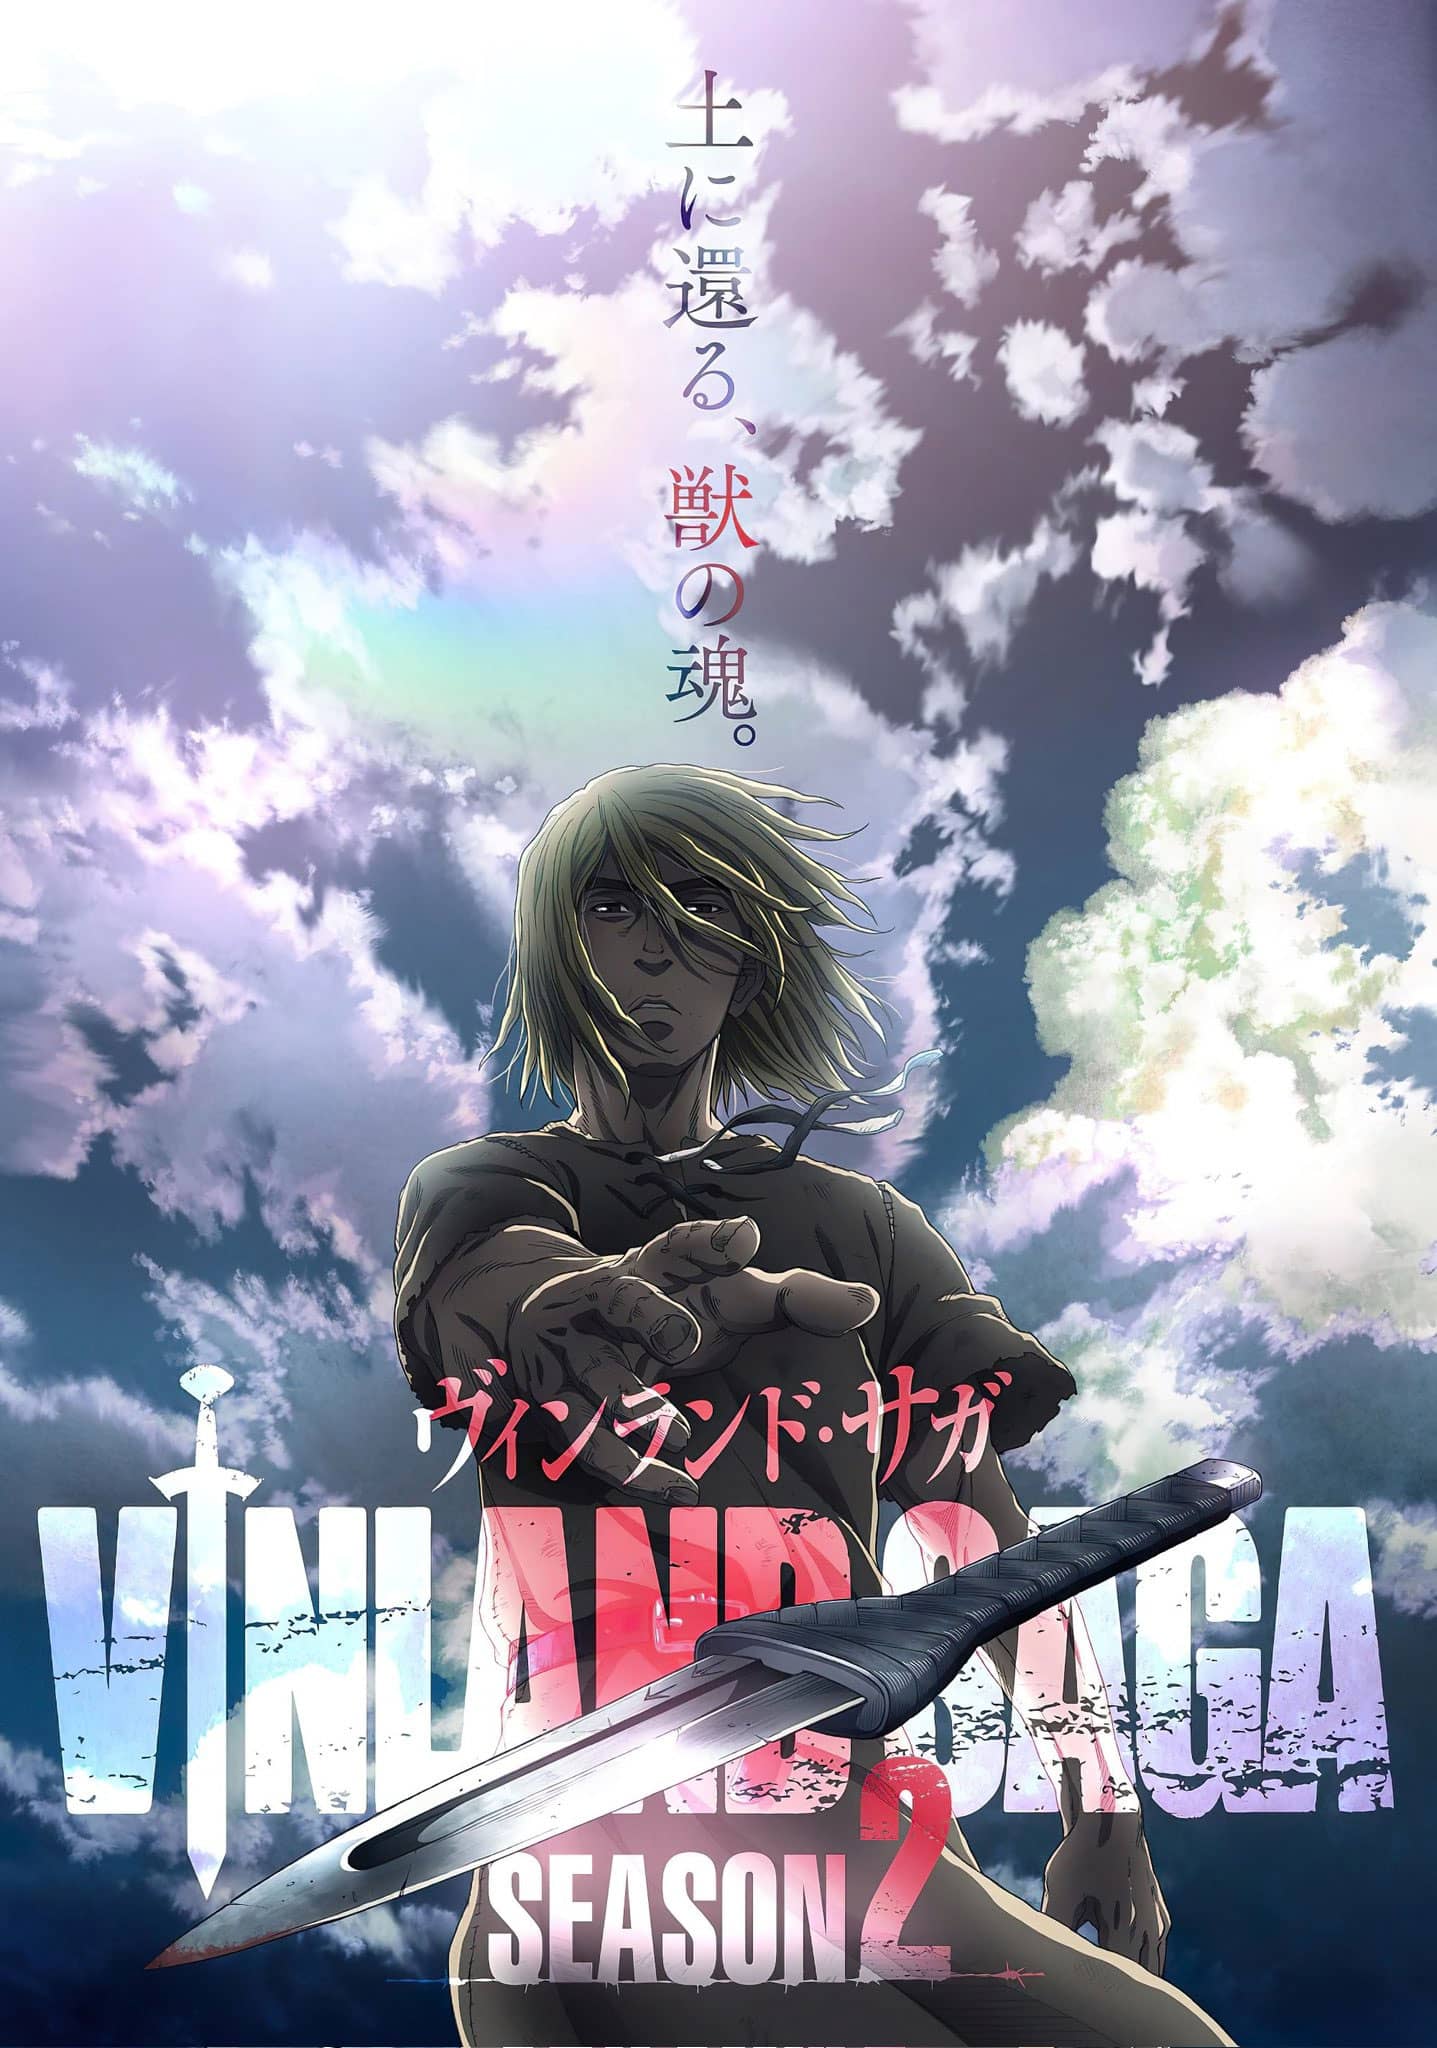 Vinland Saga 2 anime visual